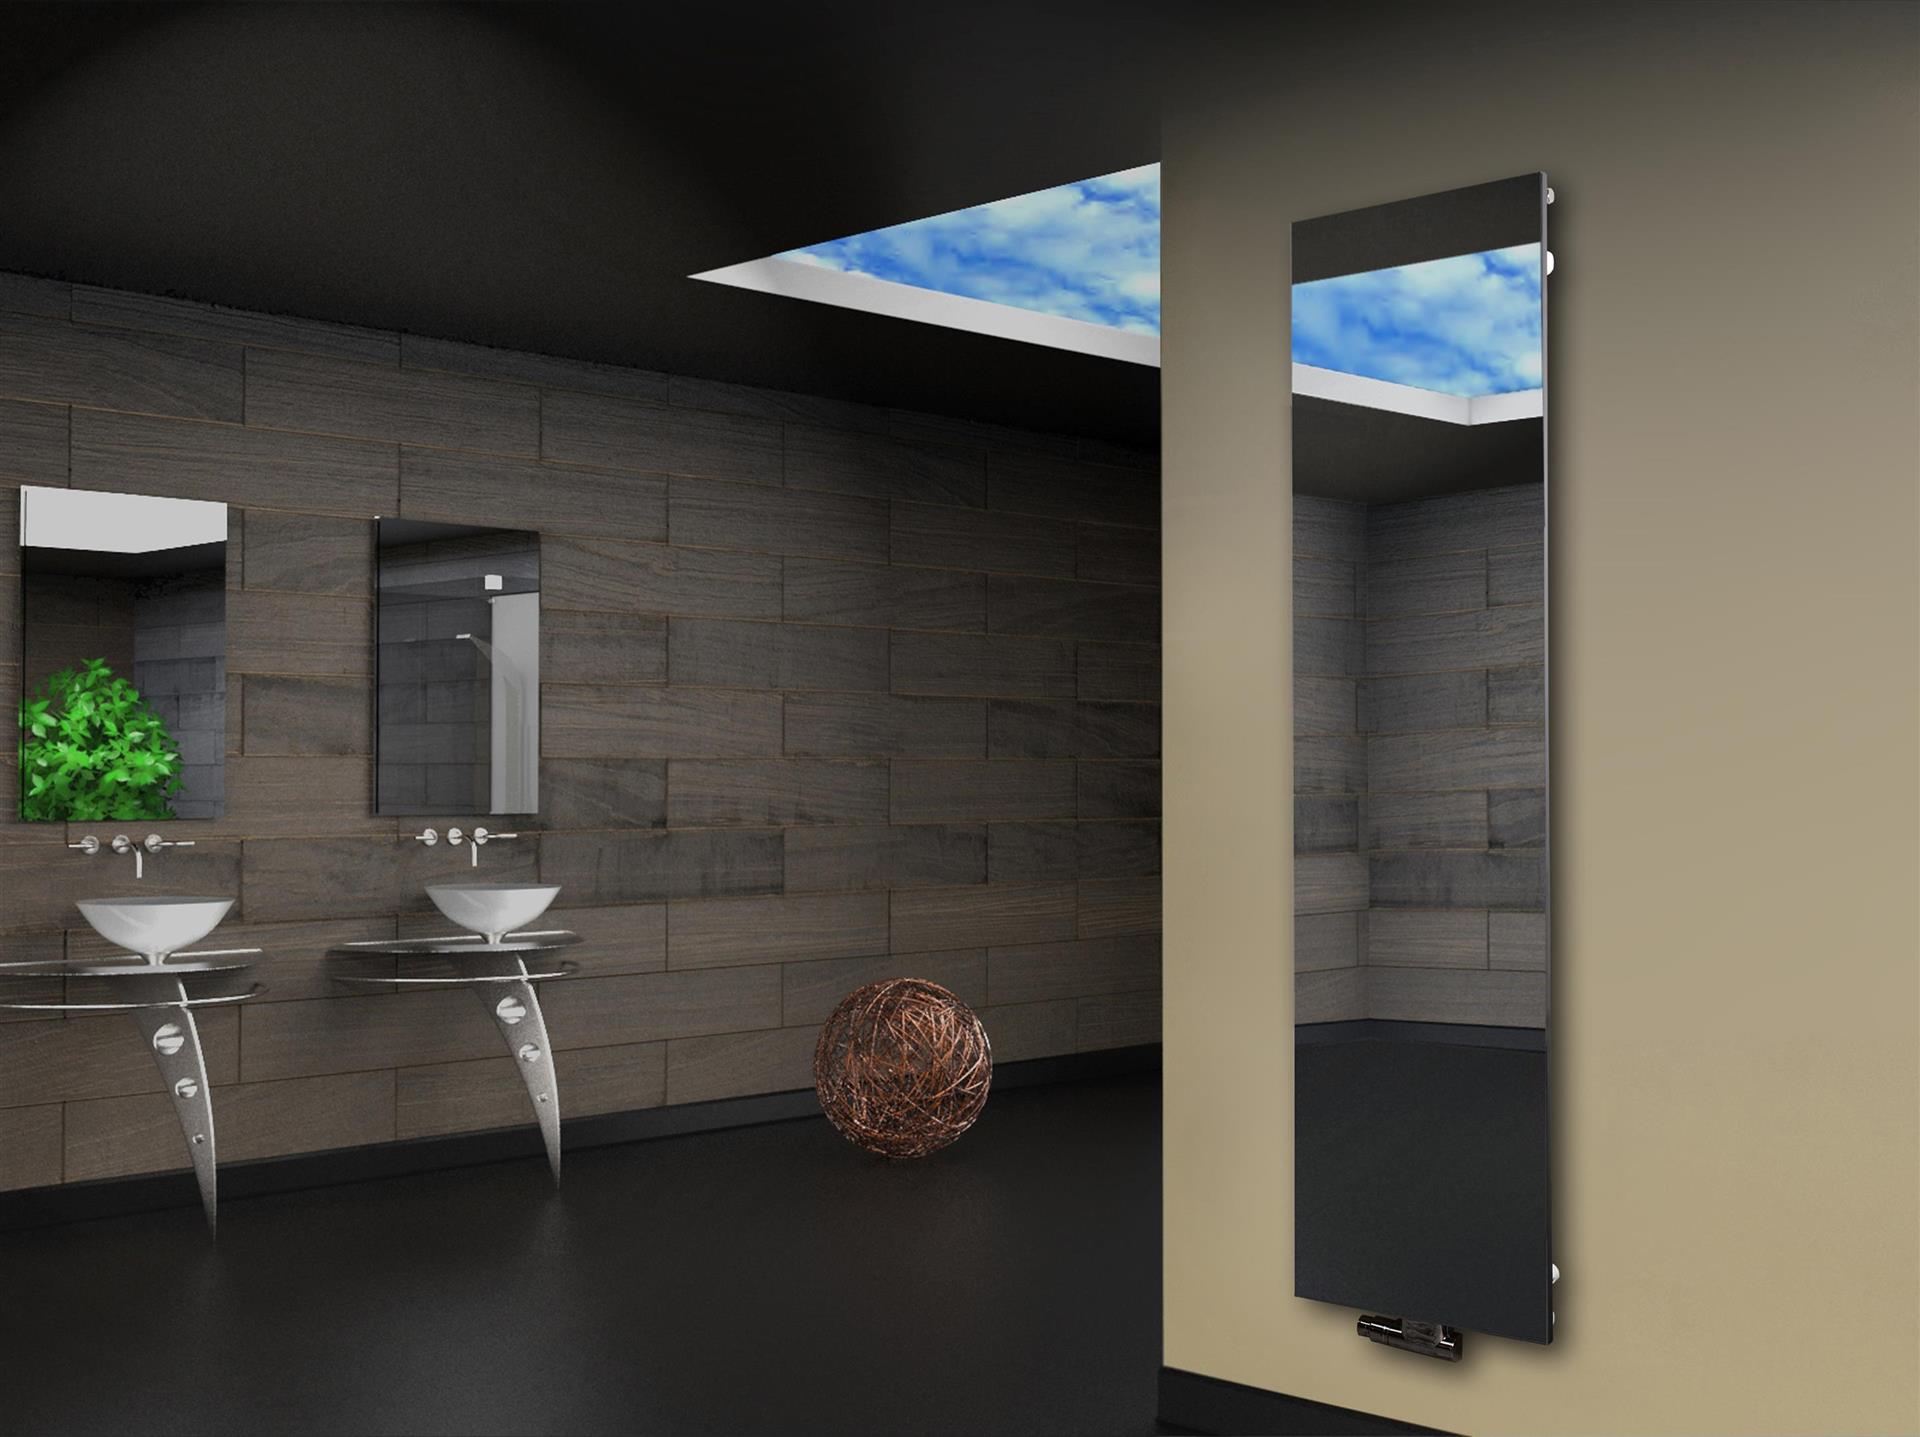 Badheizkörper mit Spiegel Montevideo 180cm 1118 Watt kaufen